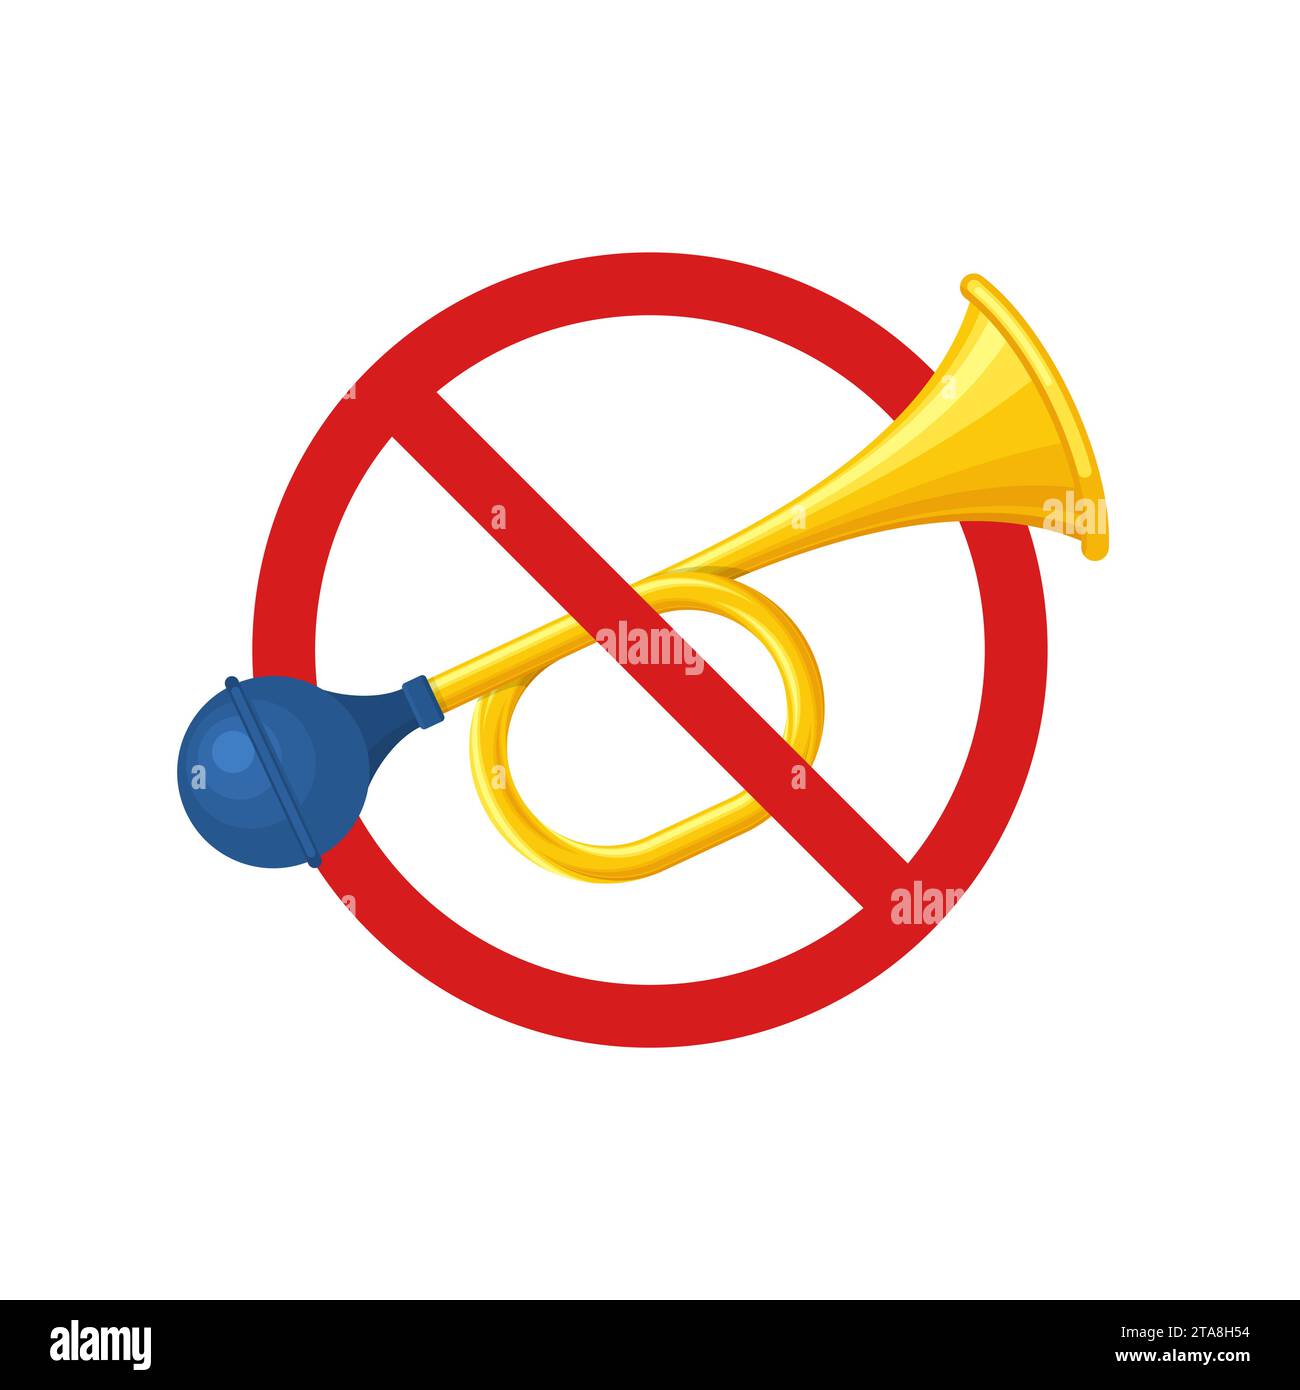 Kein Signalhorn auf weißem Hintergrund. Durchgestrichenes Signalhorn-Symbol, Verbot rauer Geräusche. Hupen verbieten. Kein lautes Symbol. Stock Vektor